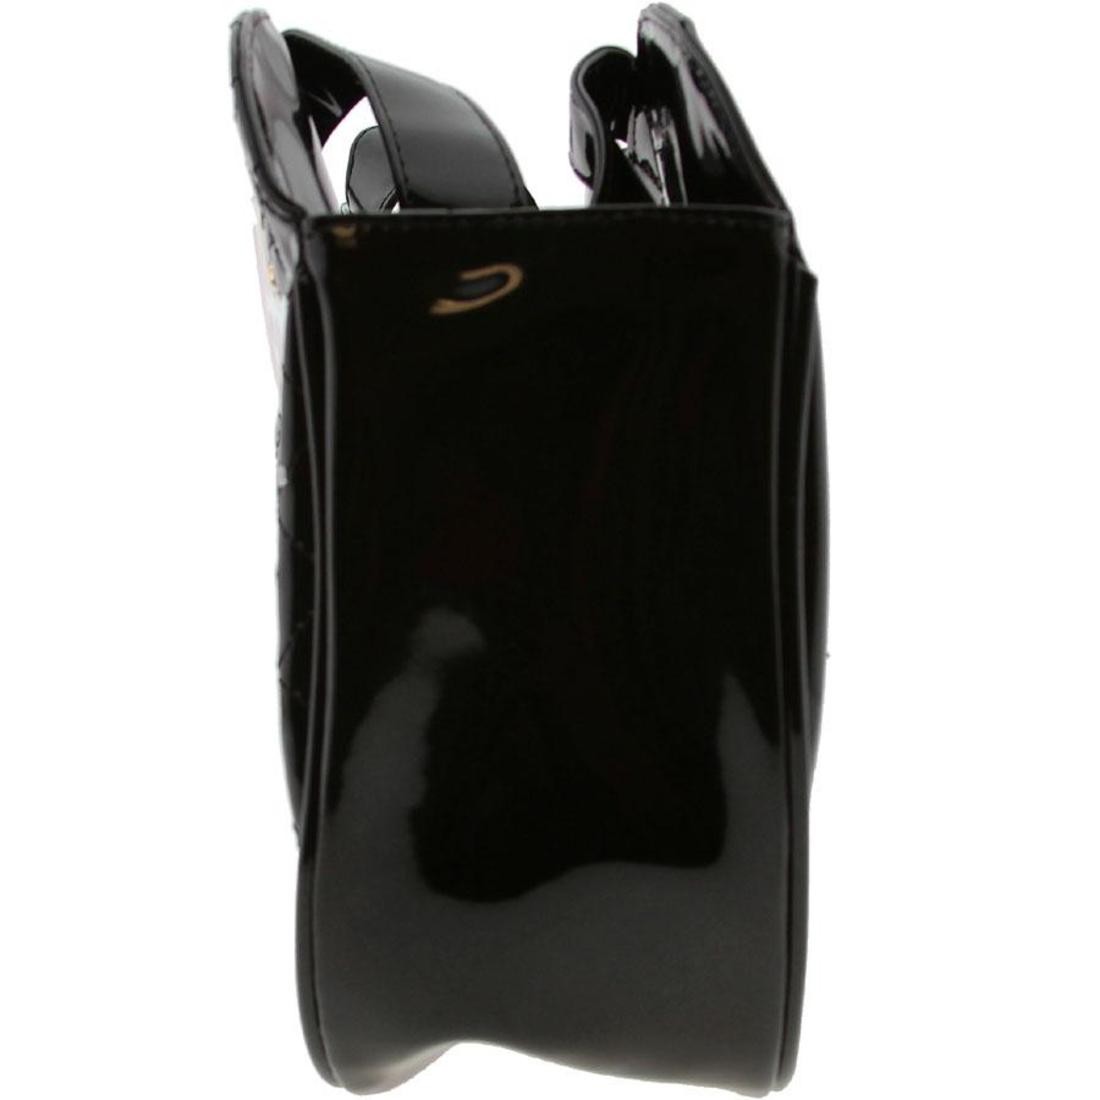 Handbag HELLO KITTY Black in Synthetic - 33105369